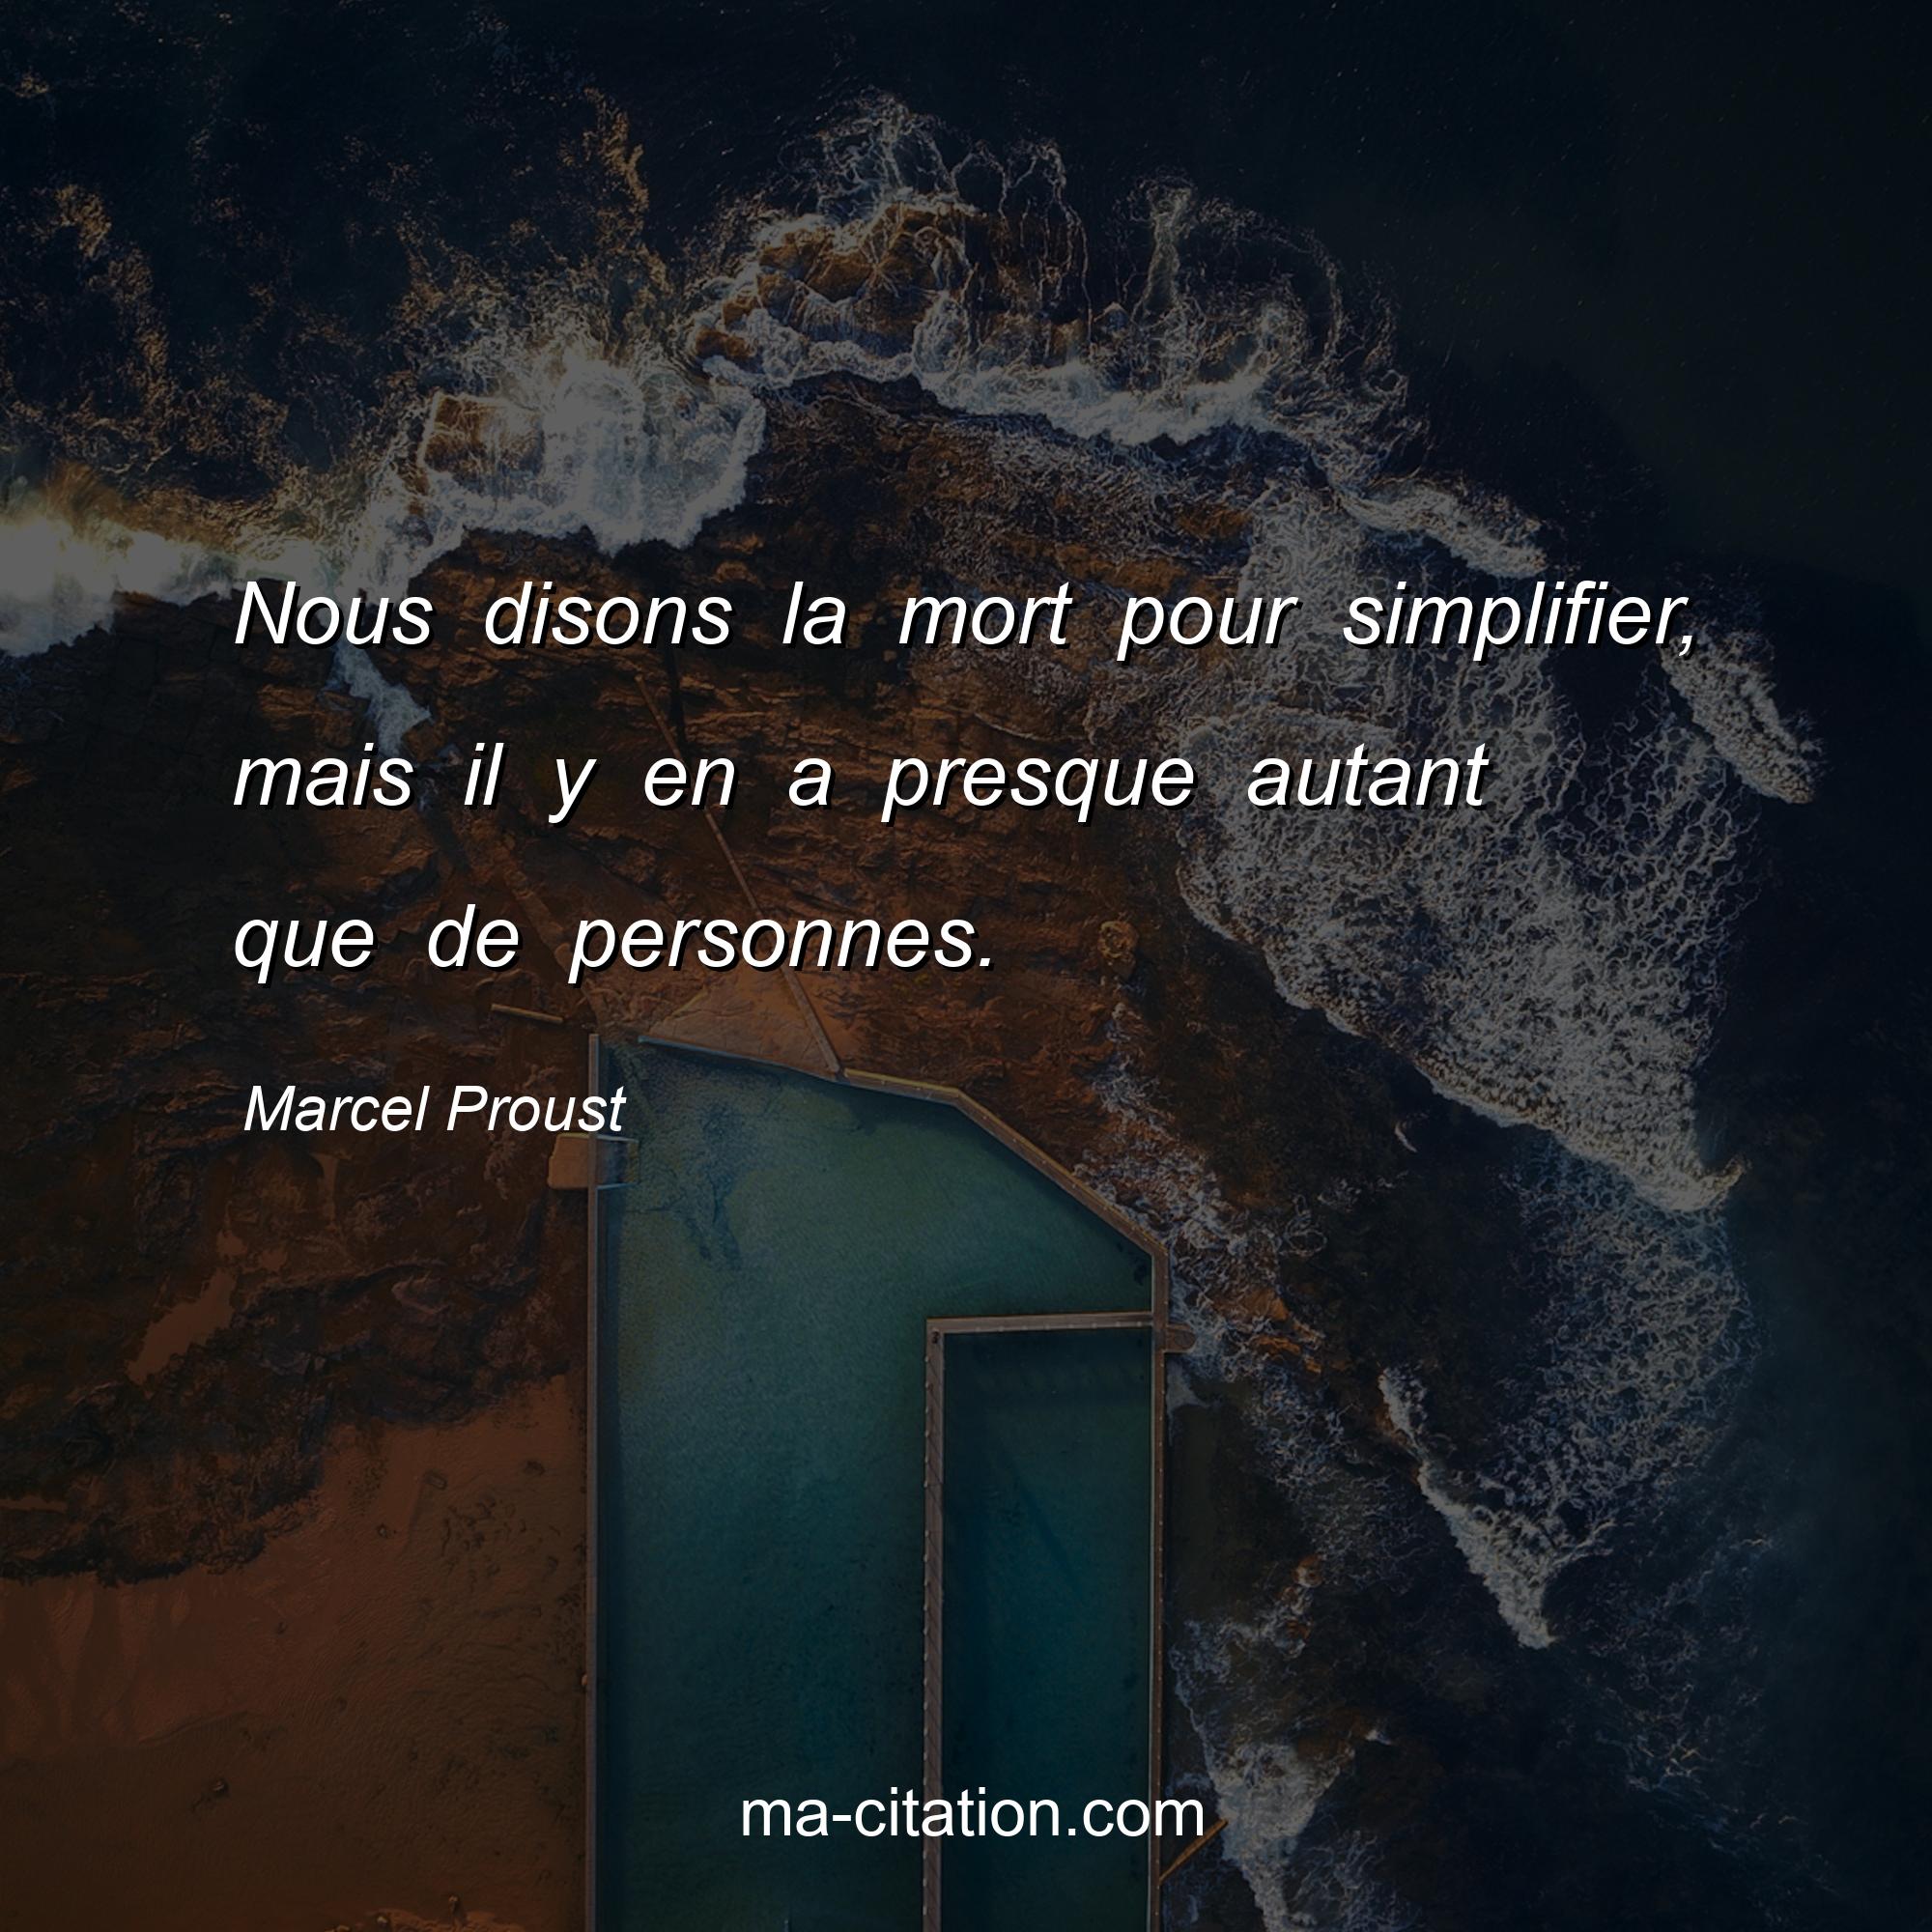 Marcel Proust : Nous disons la mort pour simplifier, mais il y en a presque autant que de personnes.